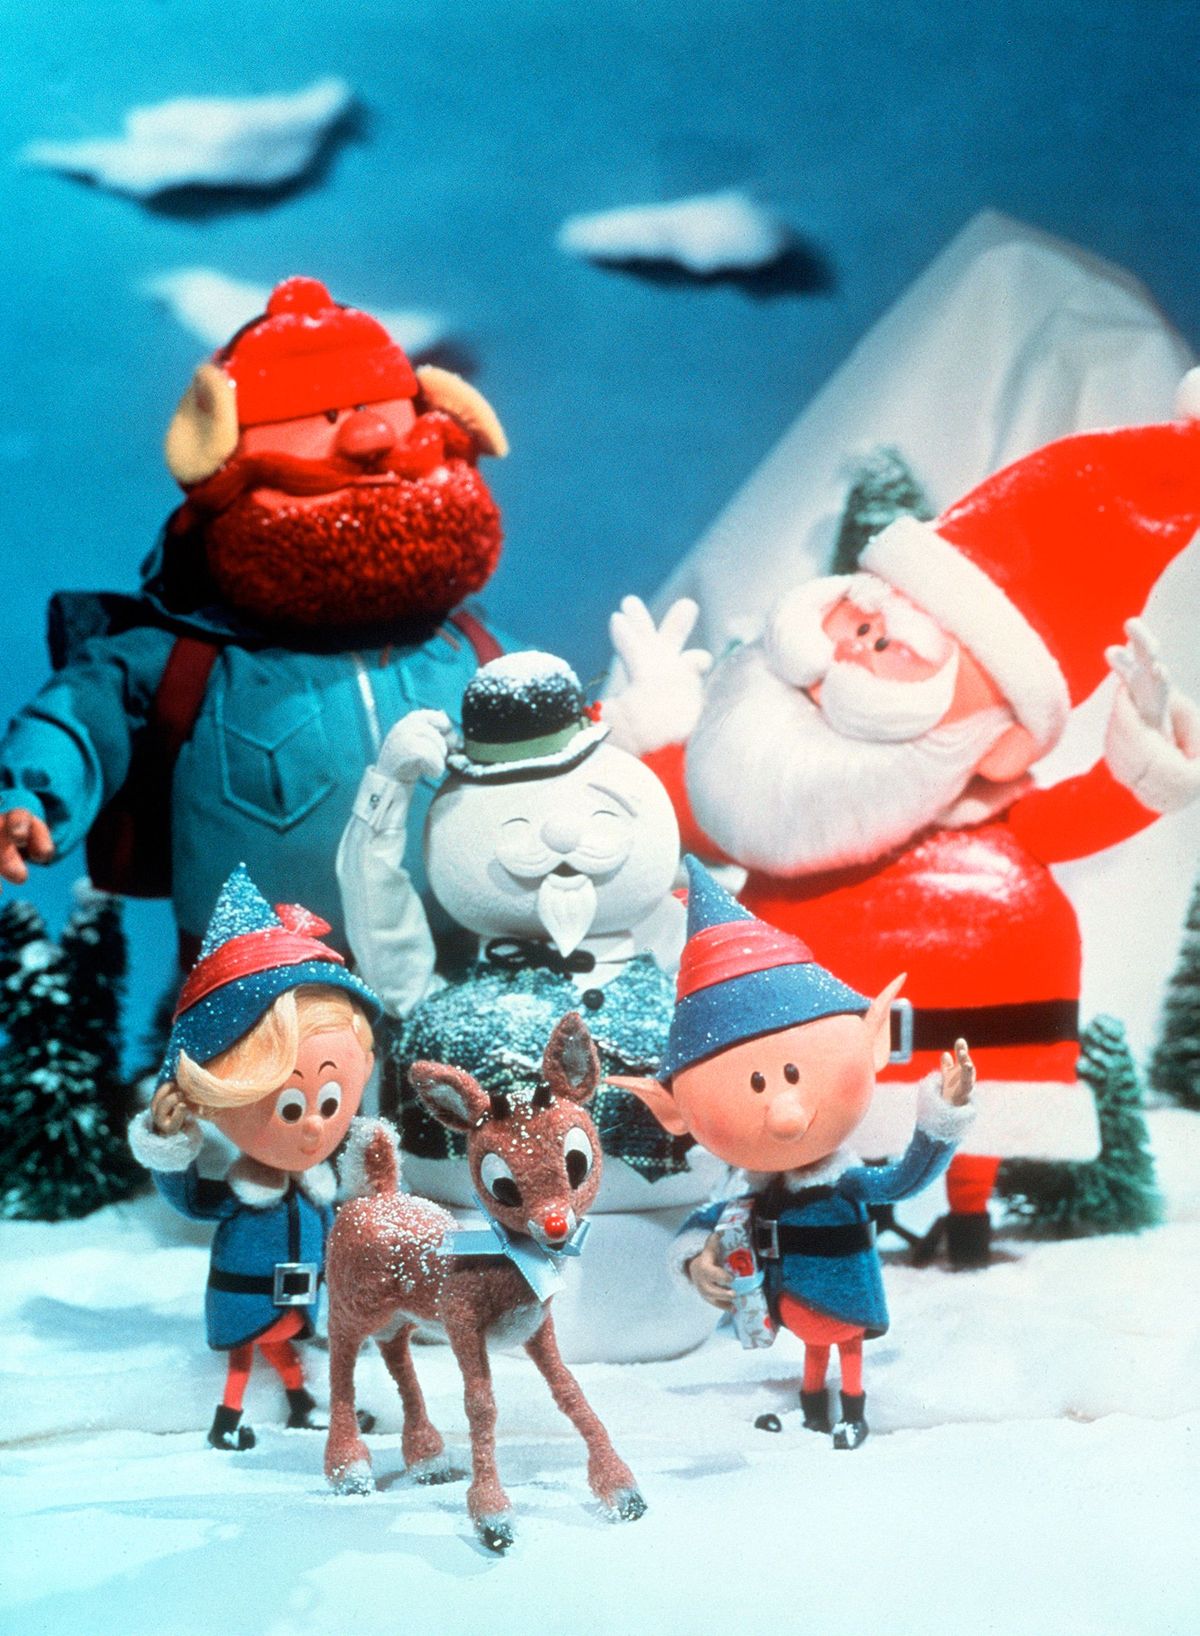 Une faute de frappe a-t-elle accidentellement fait du domaine public spécial de la télévision de Rudolph ?